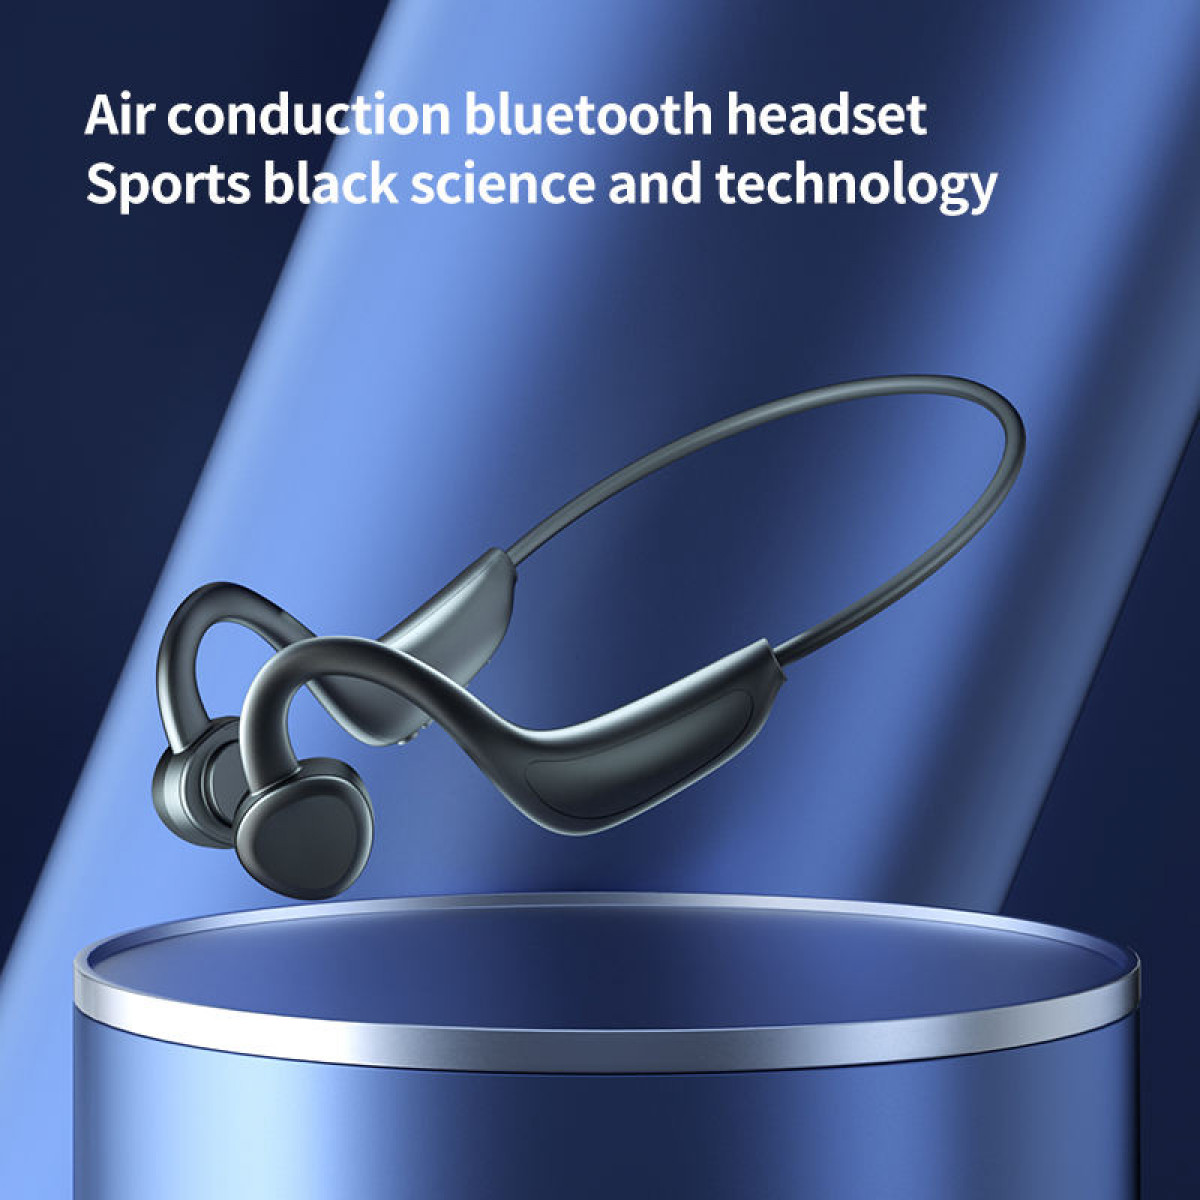 INF Luftleitungs-Funkkopfhörer, offener Kopfhörer, Gehörschutz, In-ear Kopfhörer schwarz